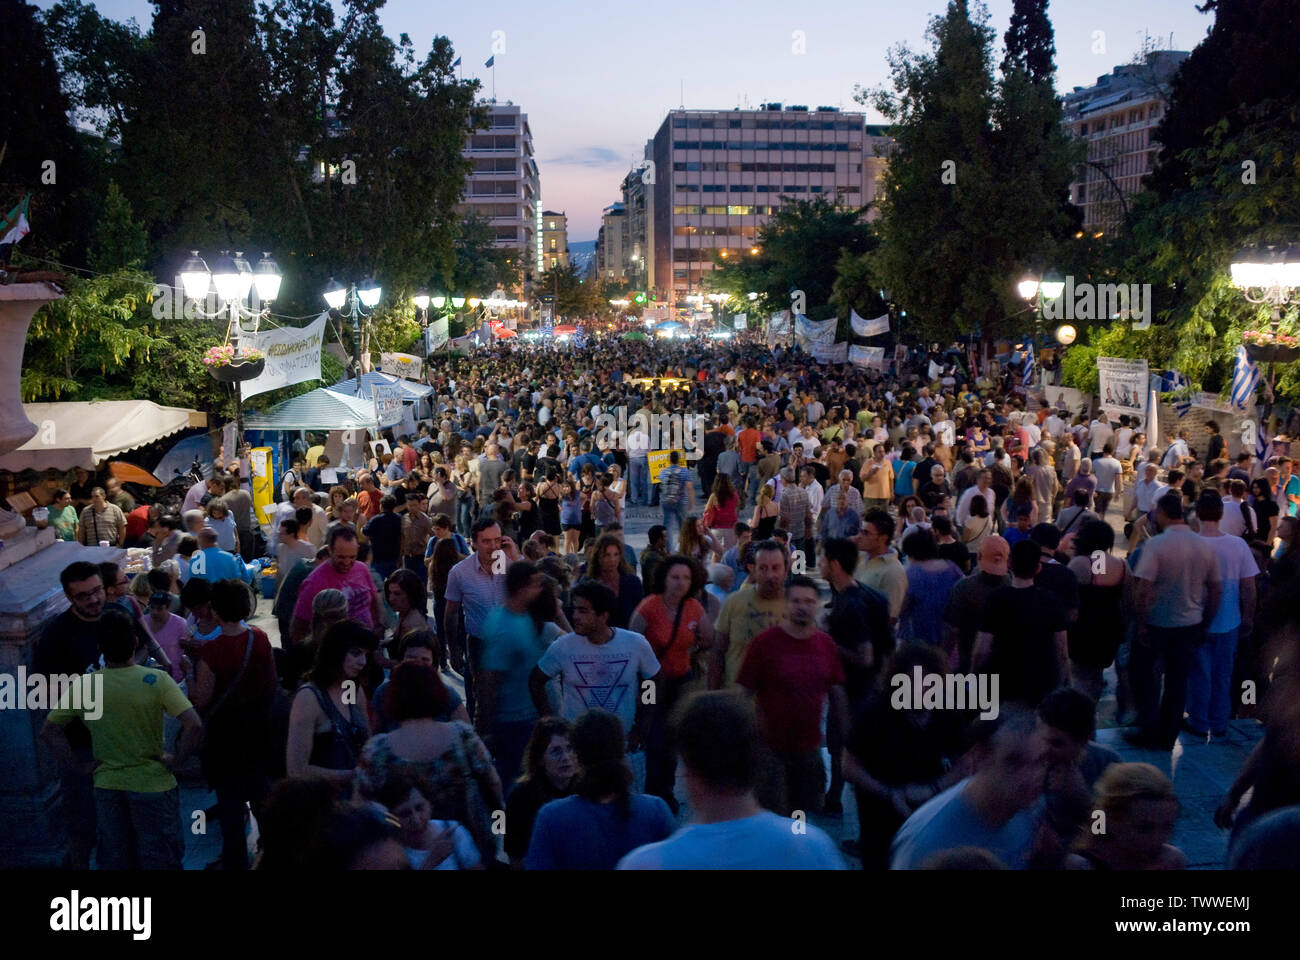 Manifestations contre les mesures d'austérité à l'extérieur du parlement grec à Athènes, Grèce. Juin 2011 Banque D'Images